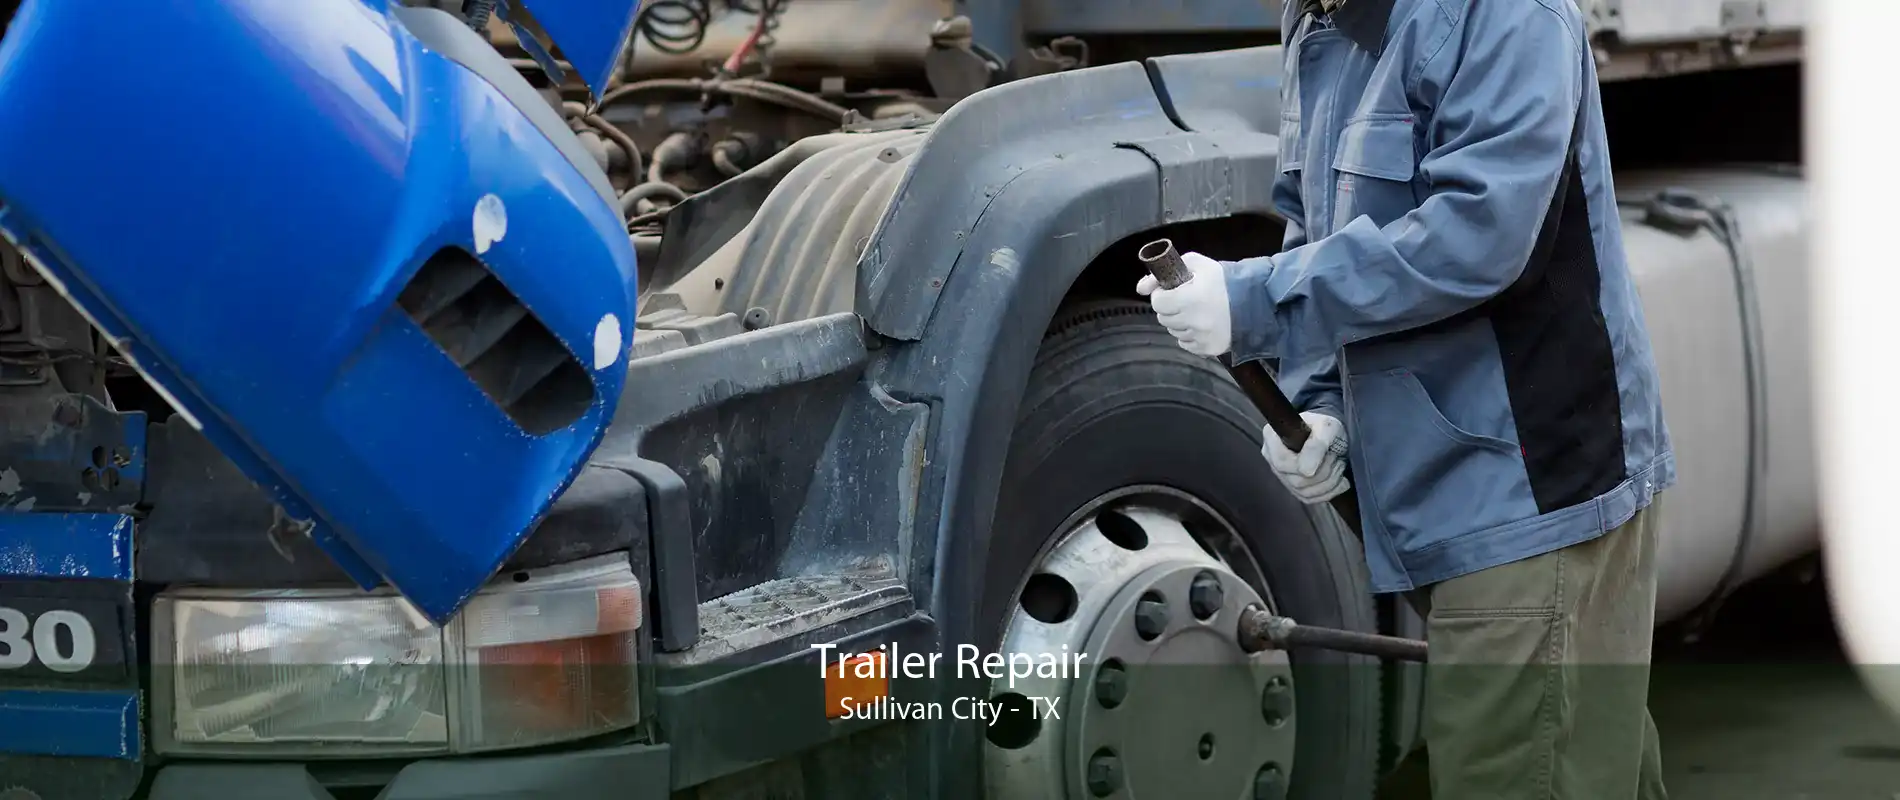 Trailer Repair Sullivan City - TX